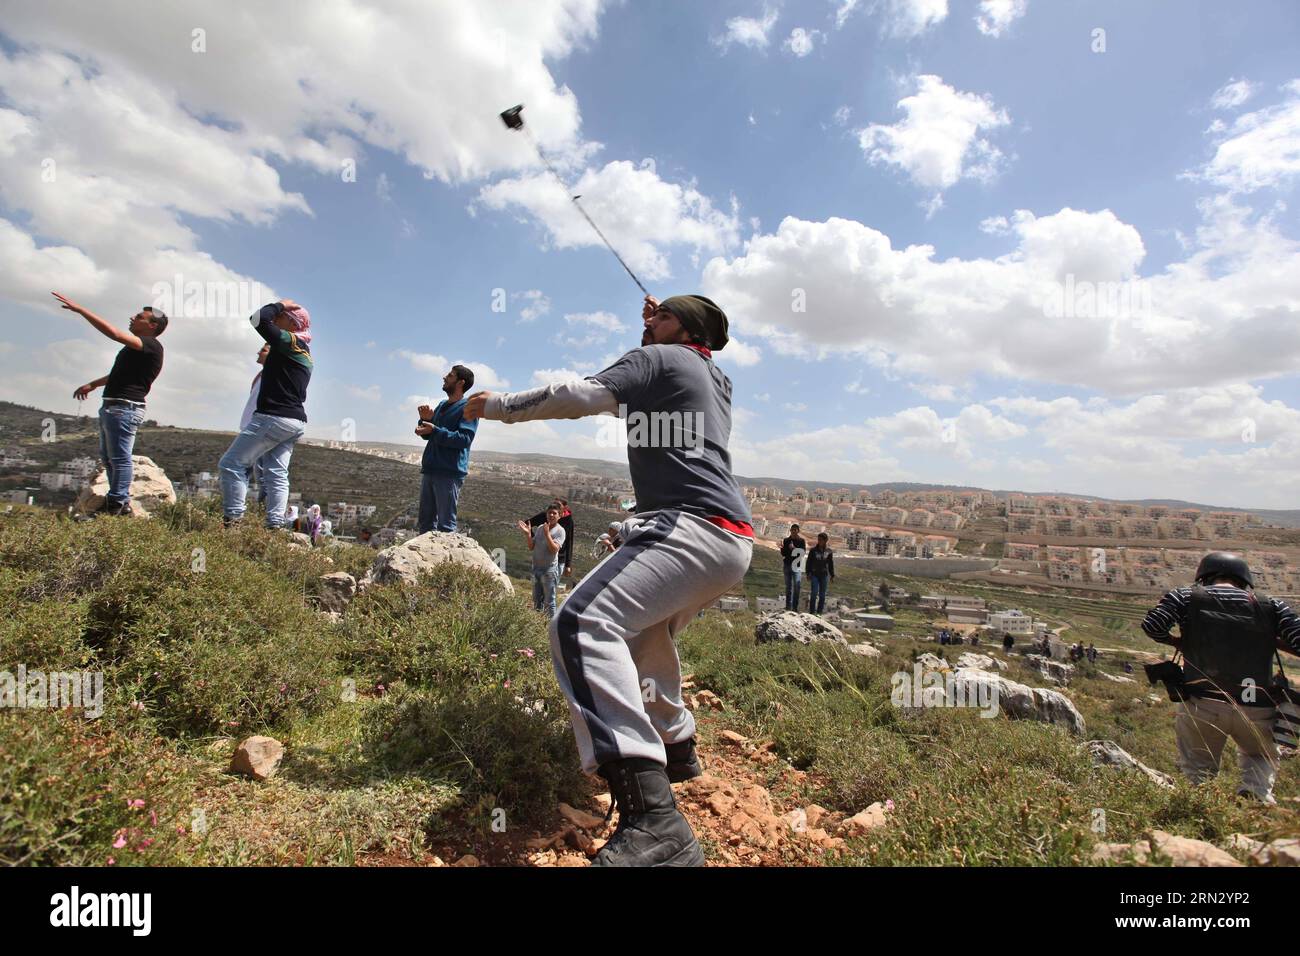 (150330) -- BETLEMME, 30 marzo 2014 -- Un manifestante palestinese lancia una pietra contro i soldati israeliani durante una protesta che segna la giornata della Terra, nel villaggio di Wadi Fukin vicino alla città di Betlemme in Cisgiordania, il prossimo marzo. 30, 2015. I palestinesi hanno celebrato la giornata della Terra il 30 marzo, la commemorazione annuale delle proteste nel 1976 contro l'appropriazione da parte di Israele di terreni di proprietà araba in Galilea. MIDEAST-BETHLEHEM-LAND-DAY-PROTESTA LuayxSababa PUBLICATIONxNOTxINxCHN Betlemme marzo 30 2014 un Hurle PALESTINESE a Stone verso i soldati israeliani durante una protesta che segna la giornata del Paese nel villaggio di Wadi vicino alla CISGIORDANIA City o Foto Stock